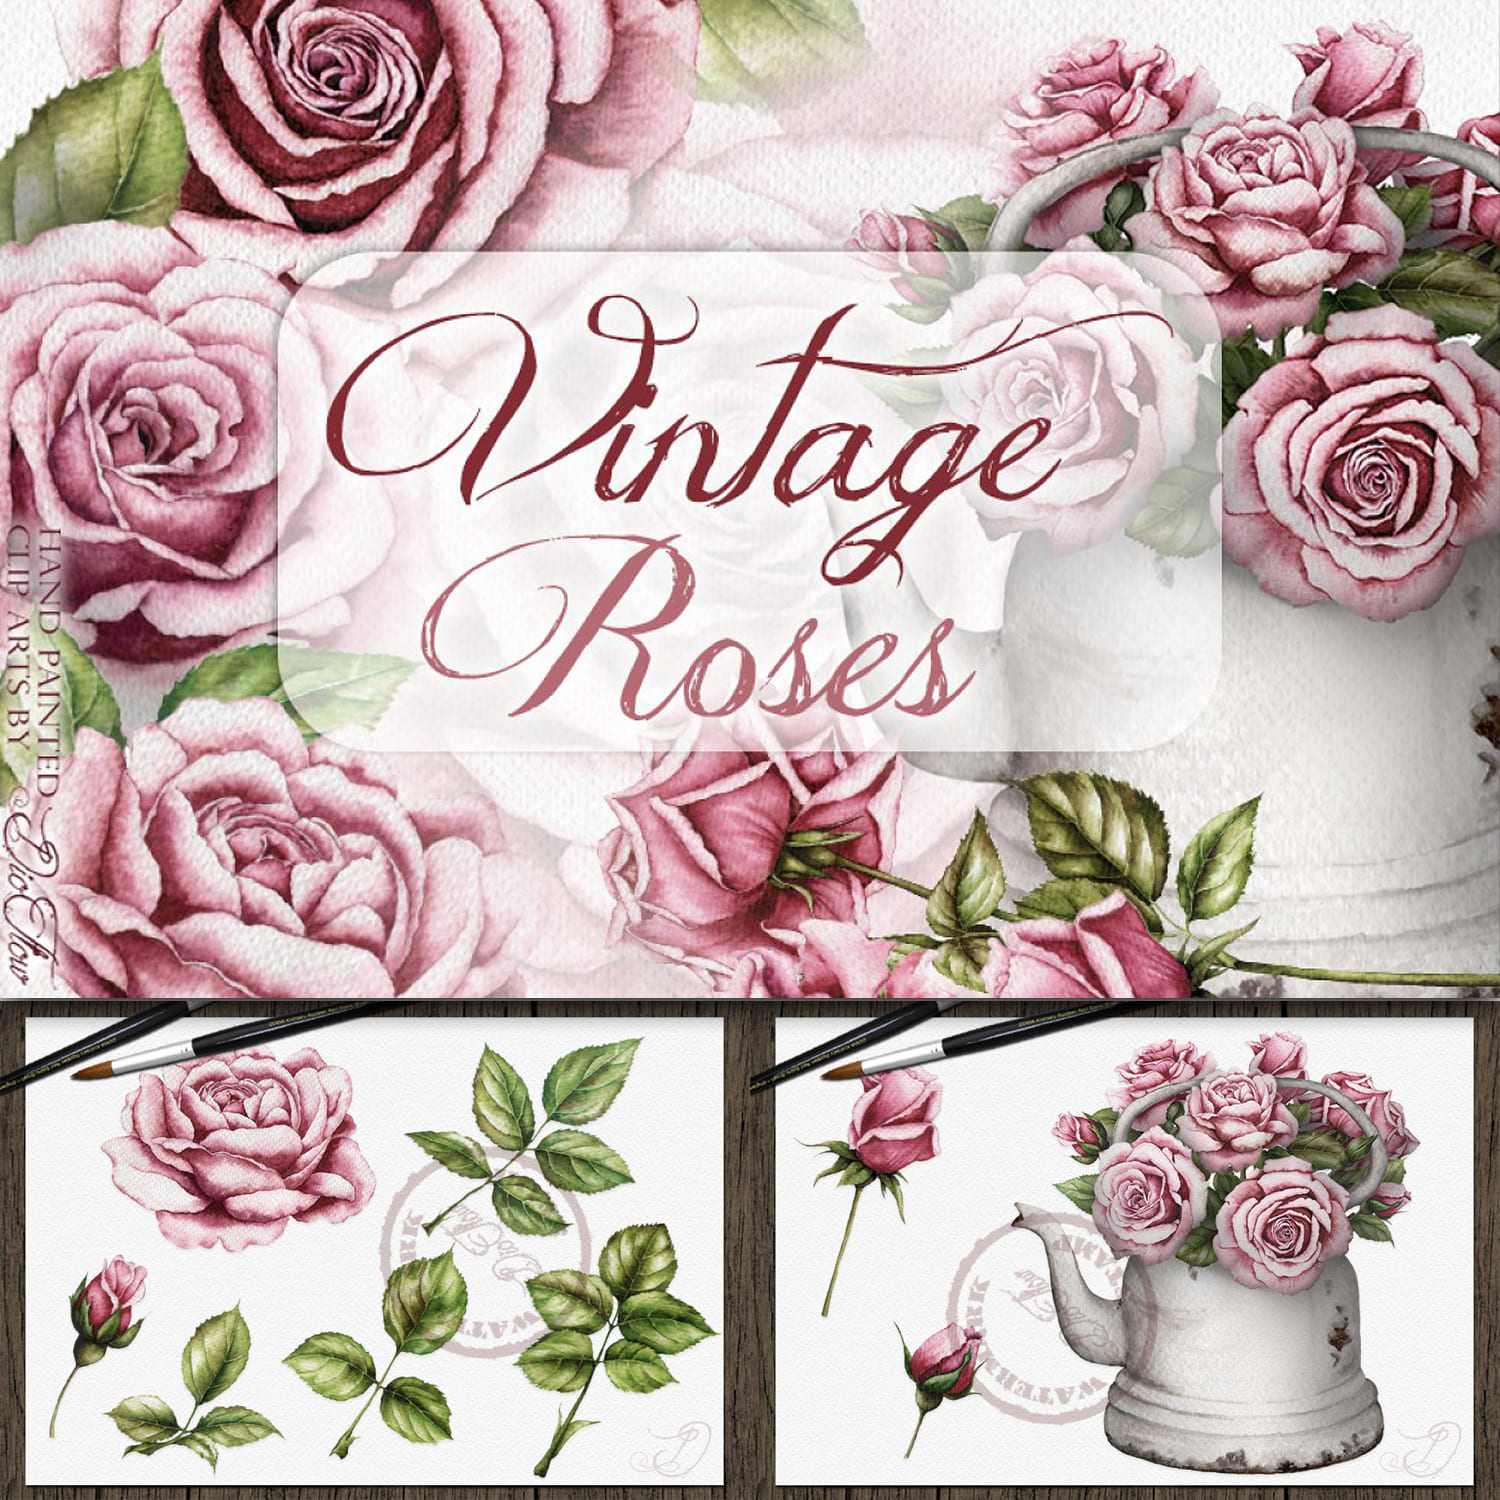 Vintage Roses Illustration.